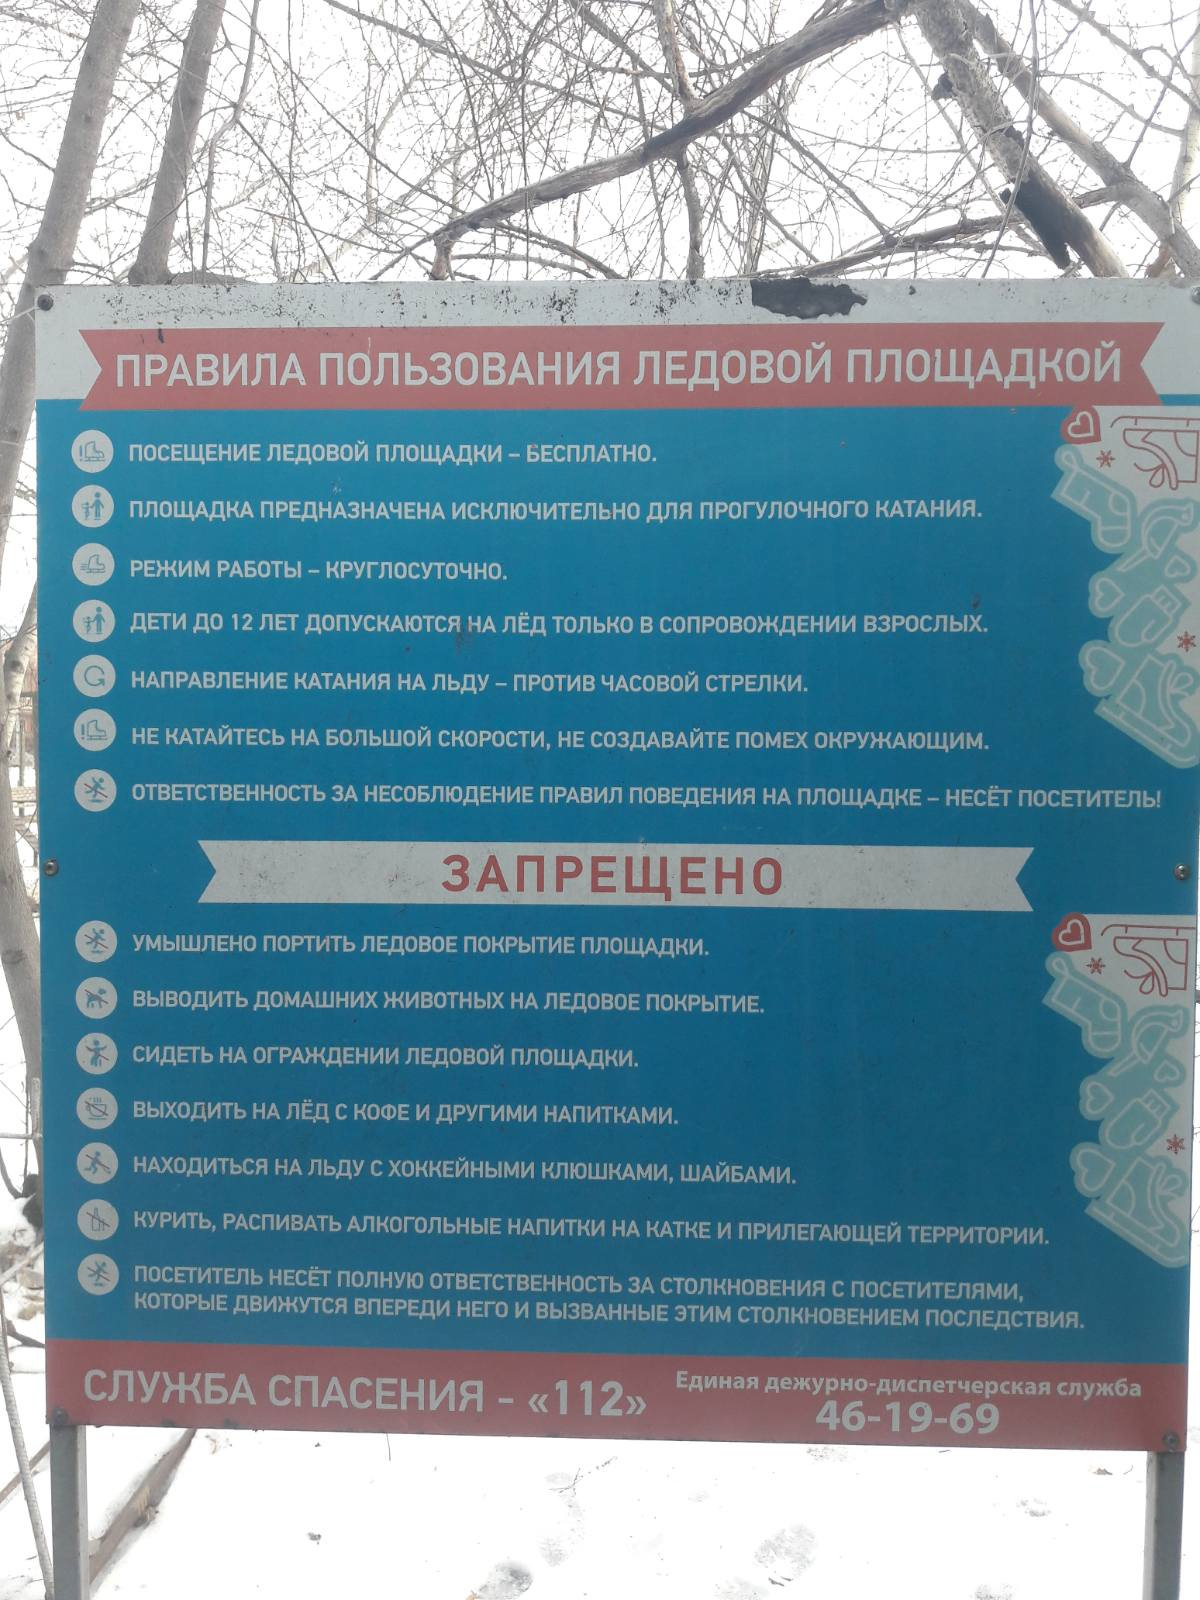 На стенде расписаны все правила поведения на катке (малышам нельзя одним на лед, покатушки с животными запрещены)